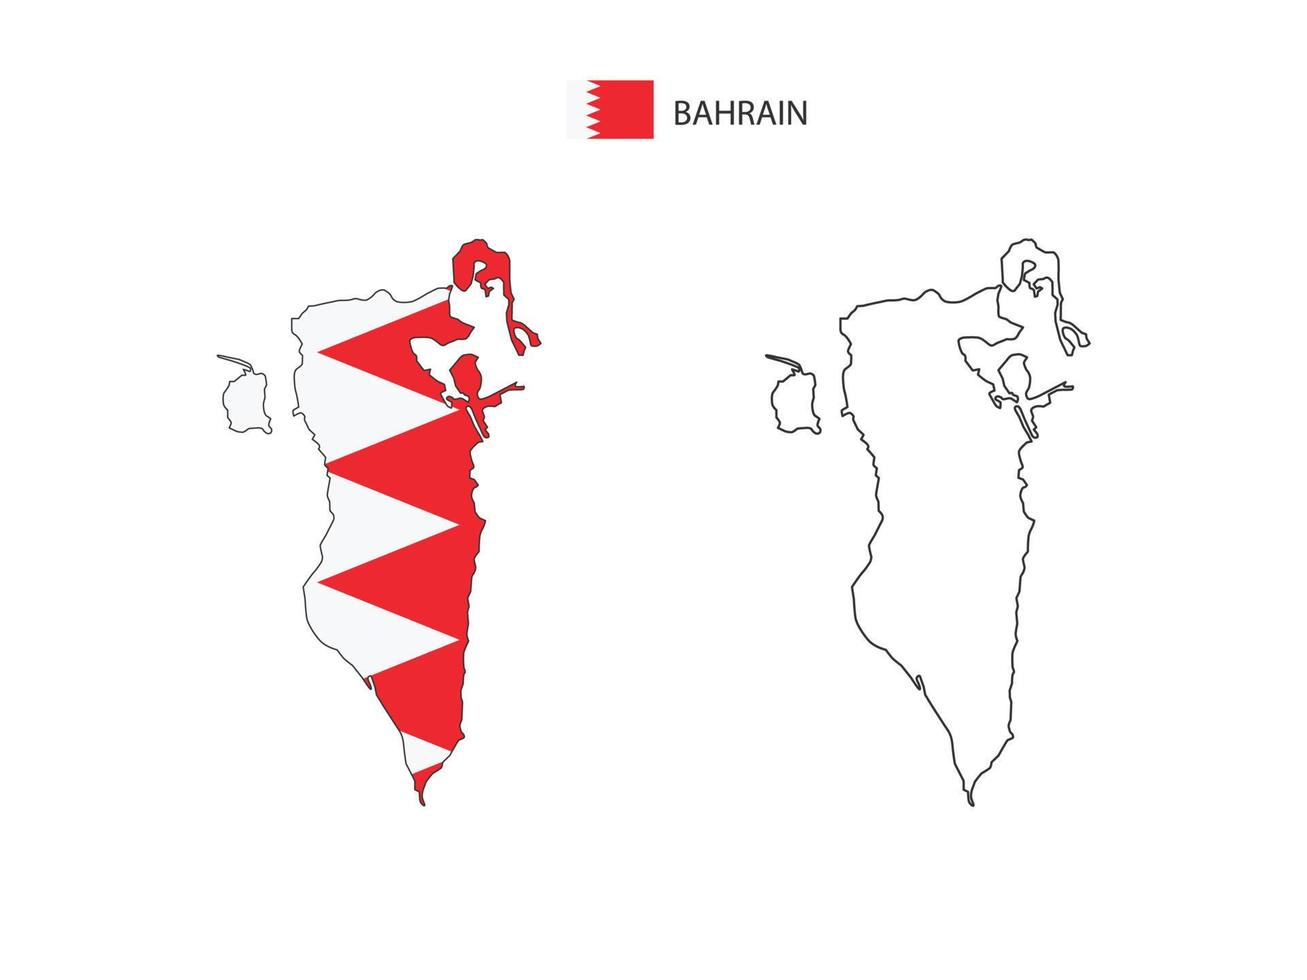 bahrain karte stadtvektor geteilt durch umrisseinfachheitsstil. haben 2 Versionen, eine schwarze Version mit dünner Linie und eine Version in der Farbe der Landesflagge. beide Karten waren auf dem weißen Hintergrund. vektor